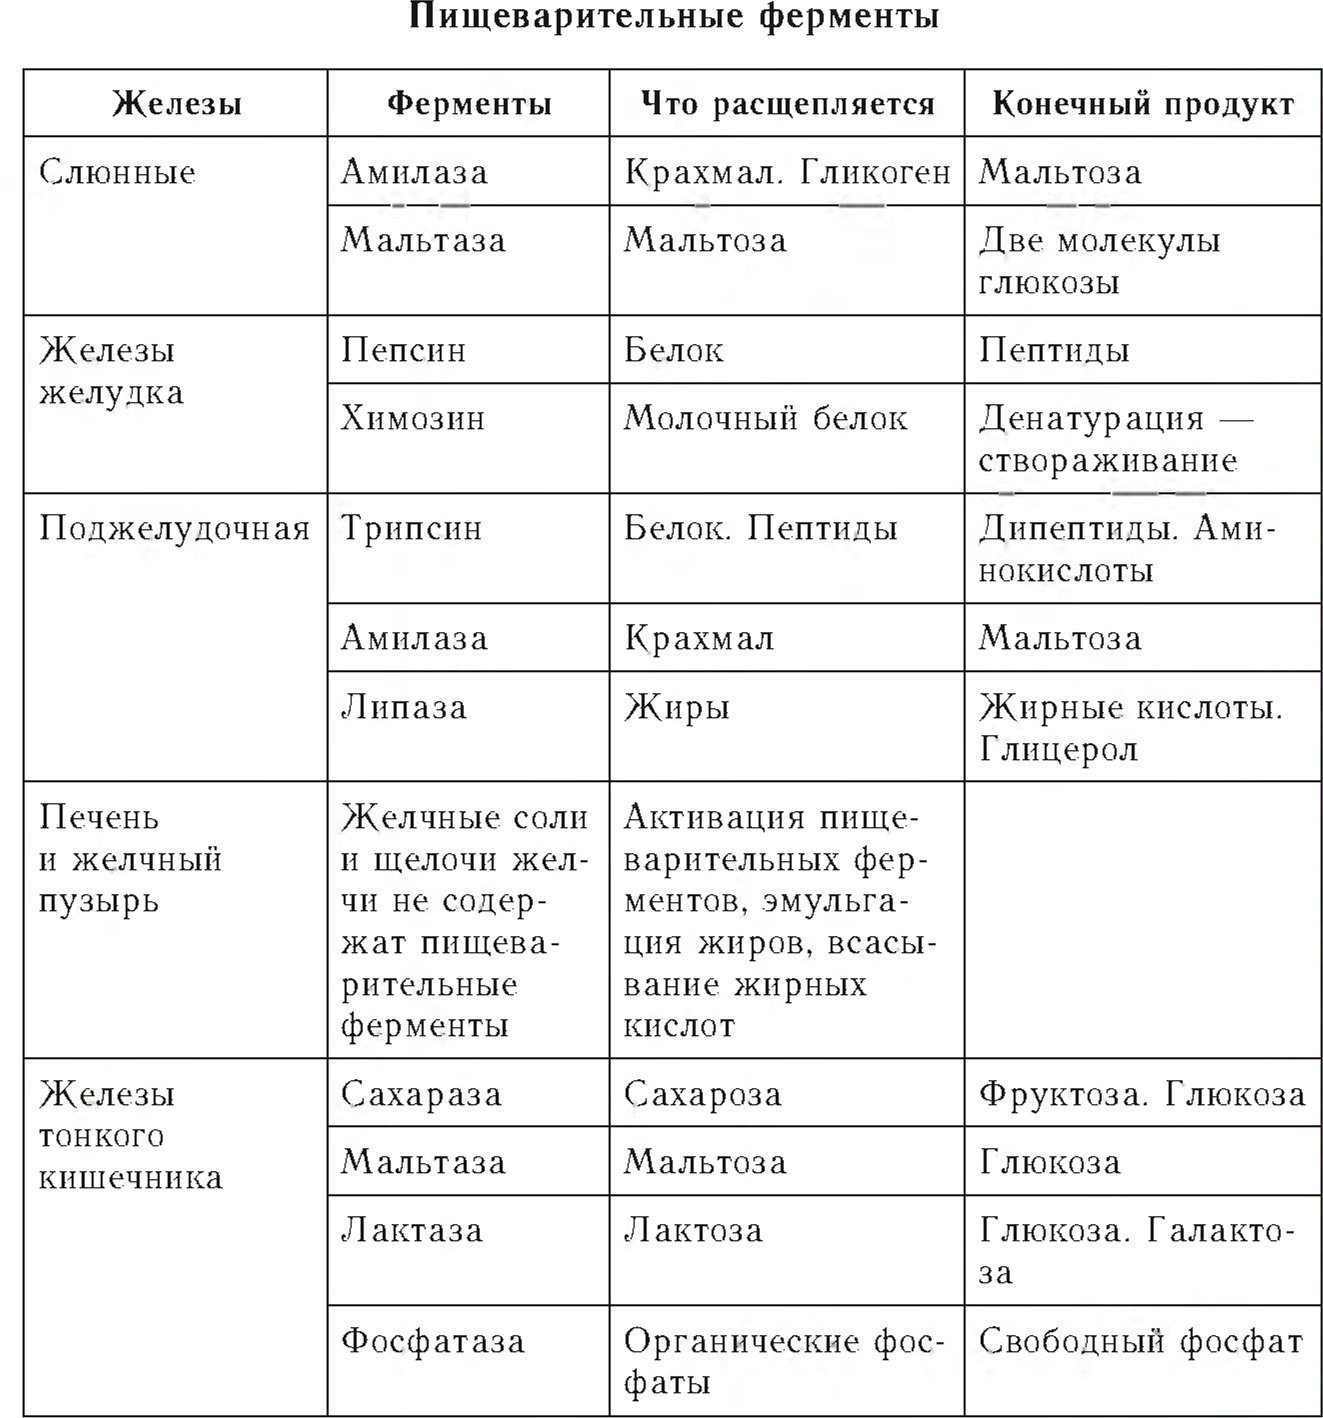 Отделы пищеварительного тракта таблица